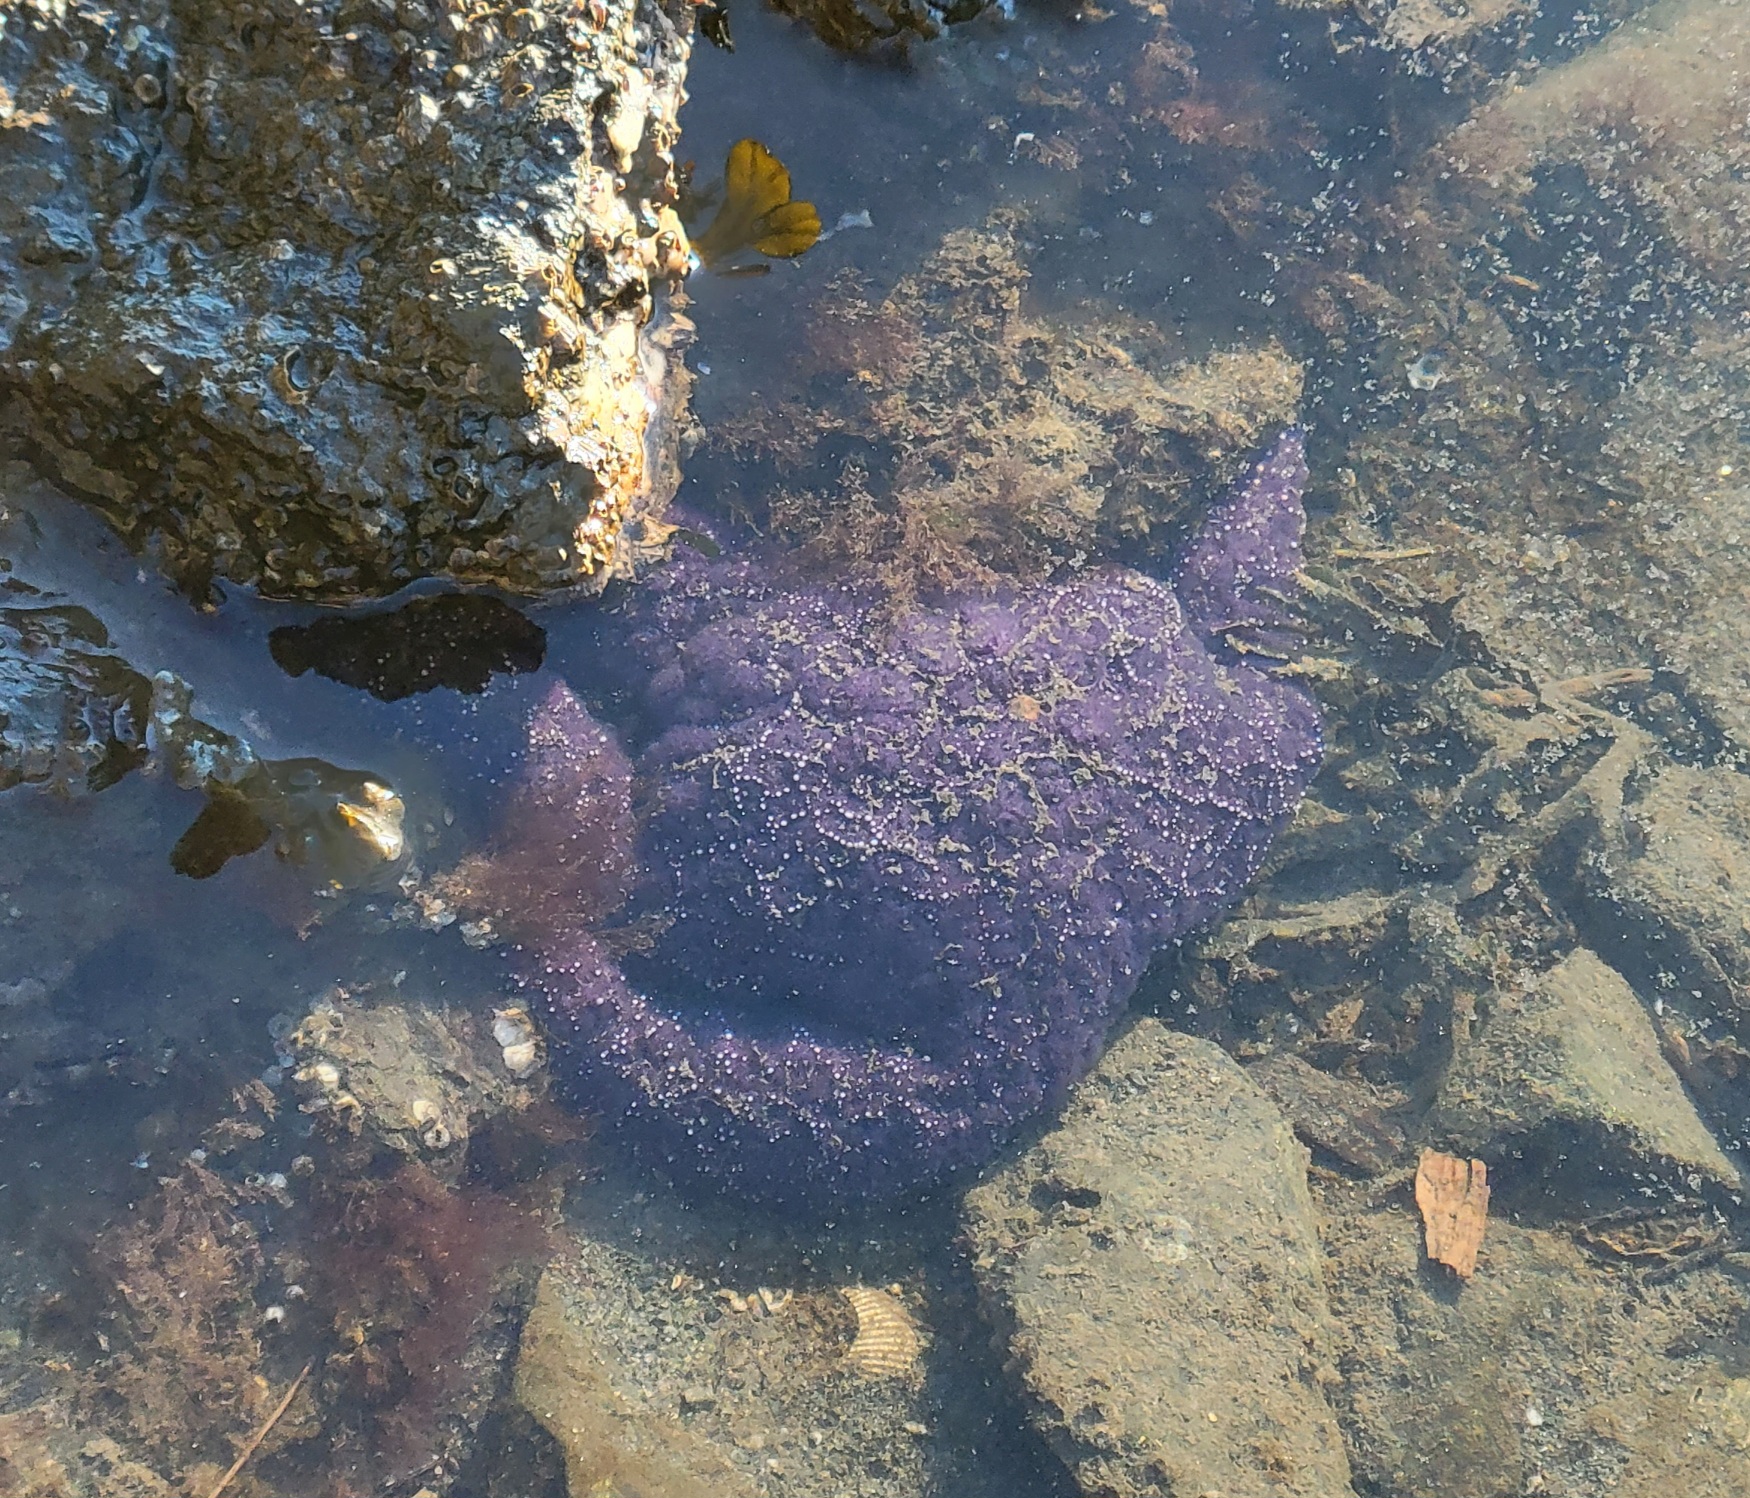 "purple seastar"